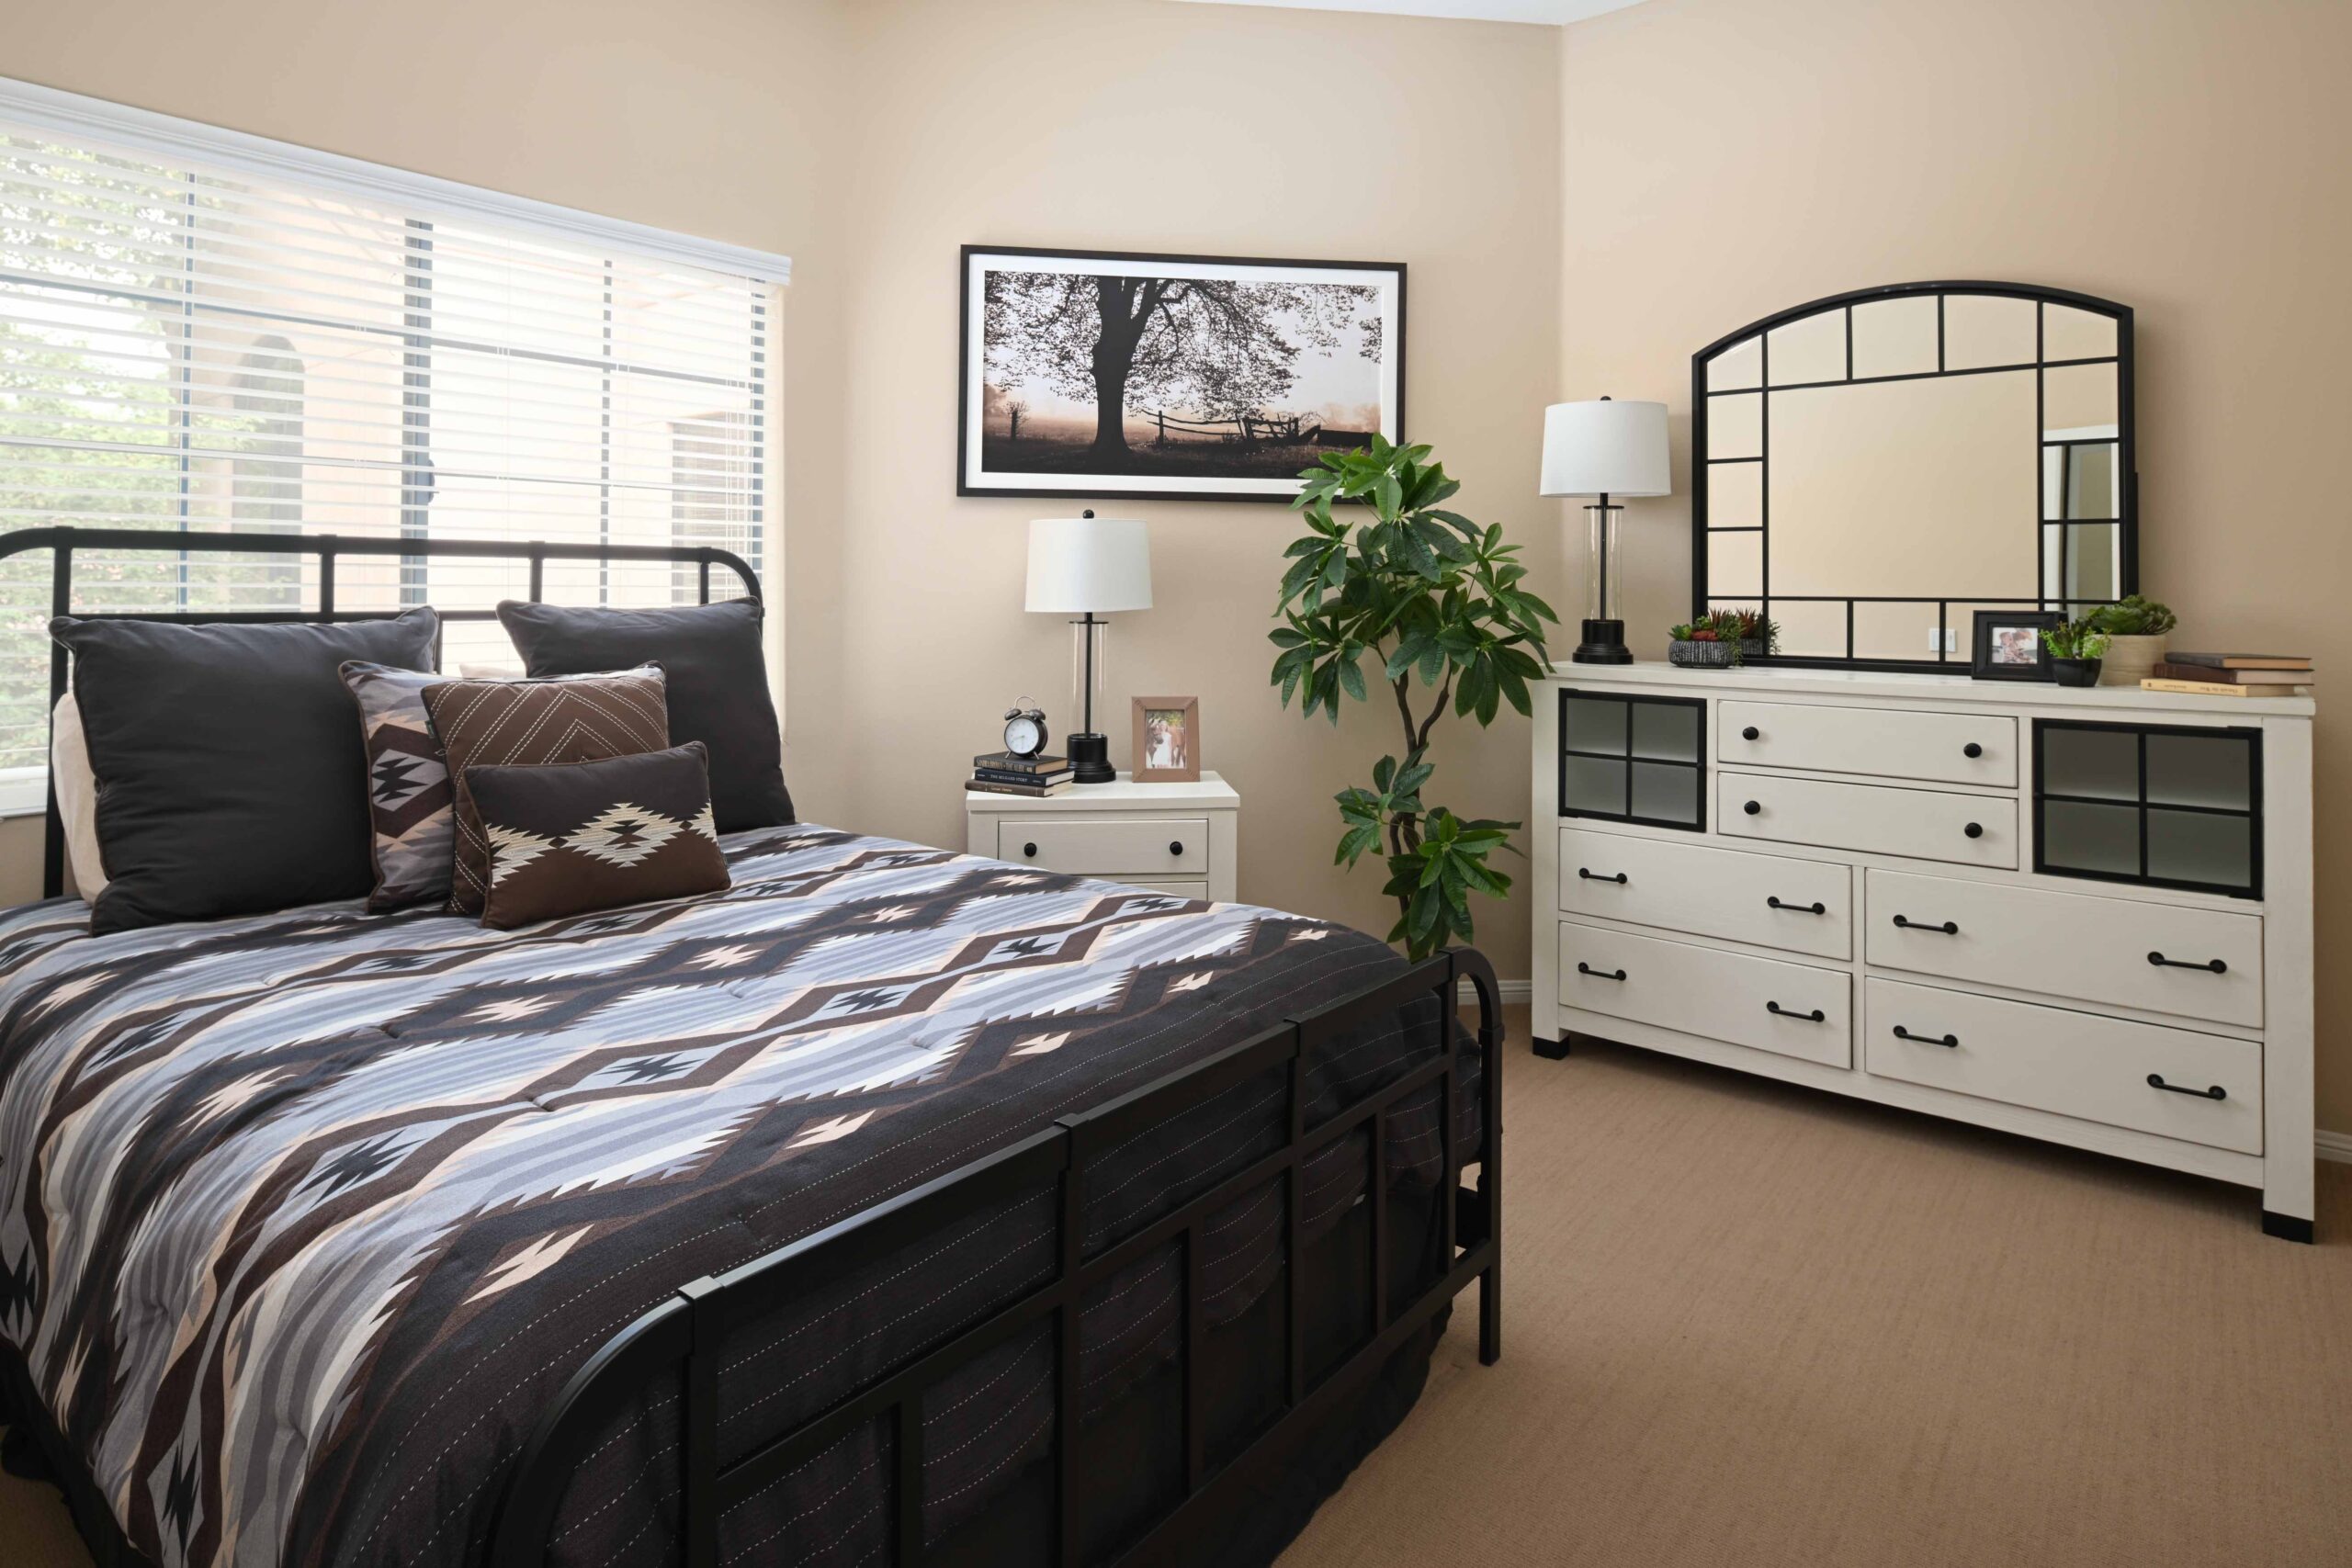 Ocotillo VIllage room model, 1 bedroom master bedroom, luxury